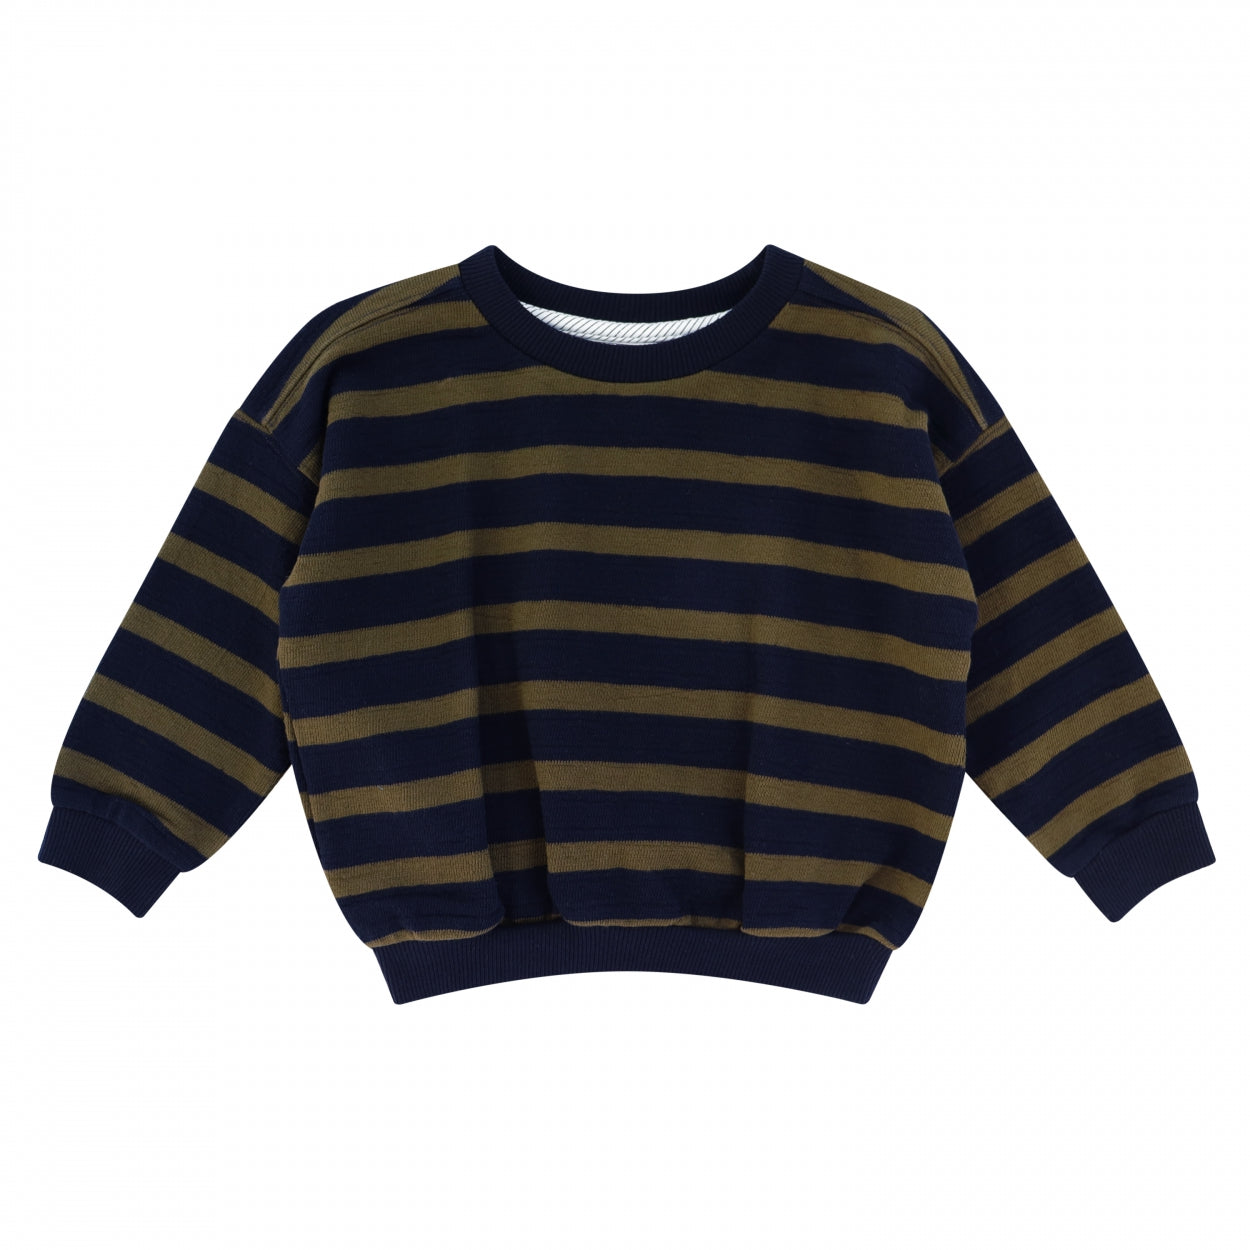 Jongens Sweater Tub | Gene van Your Wishes in de kleur Multicolor in maat 92.